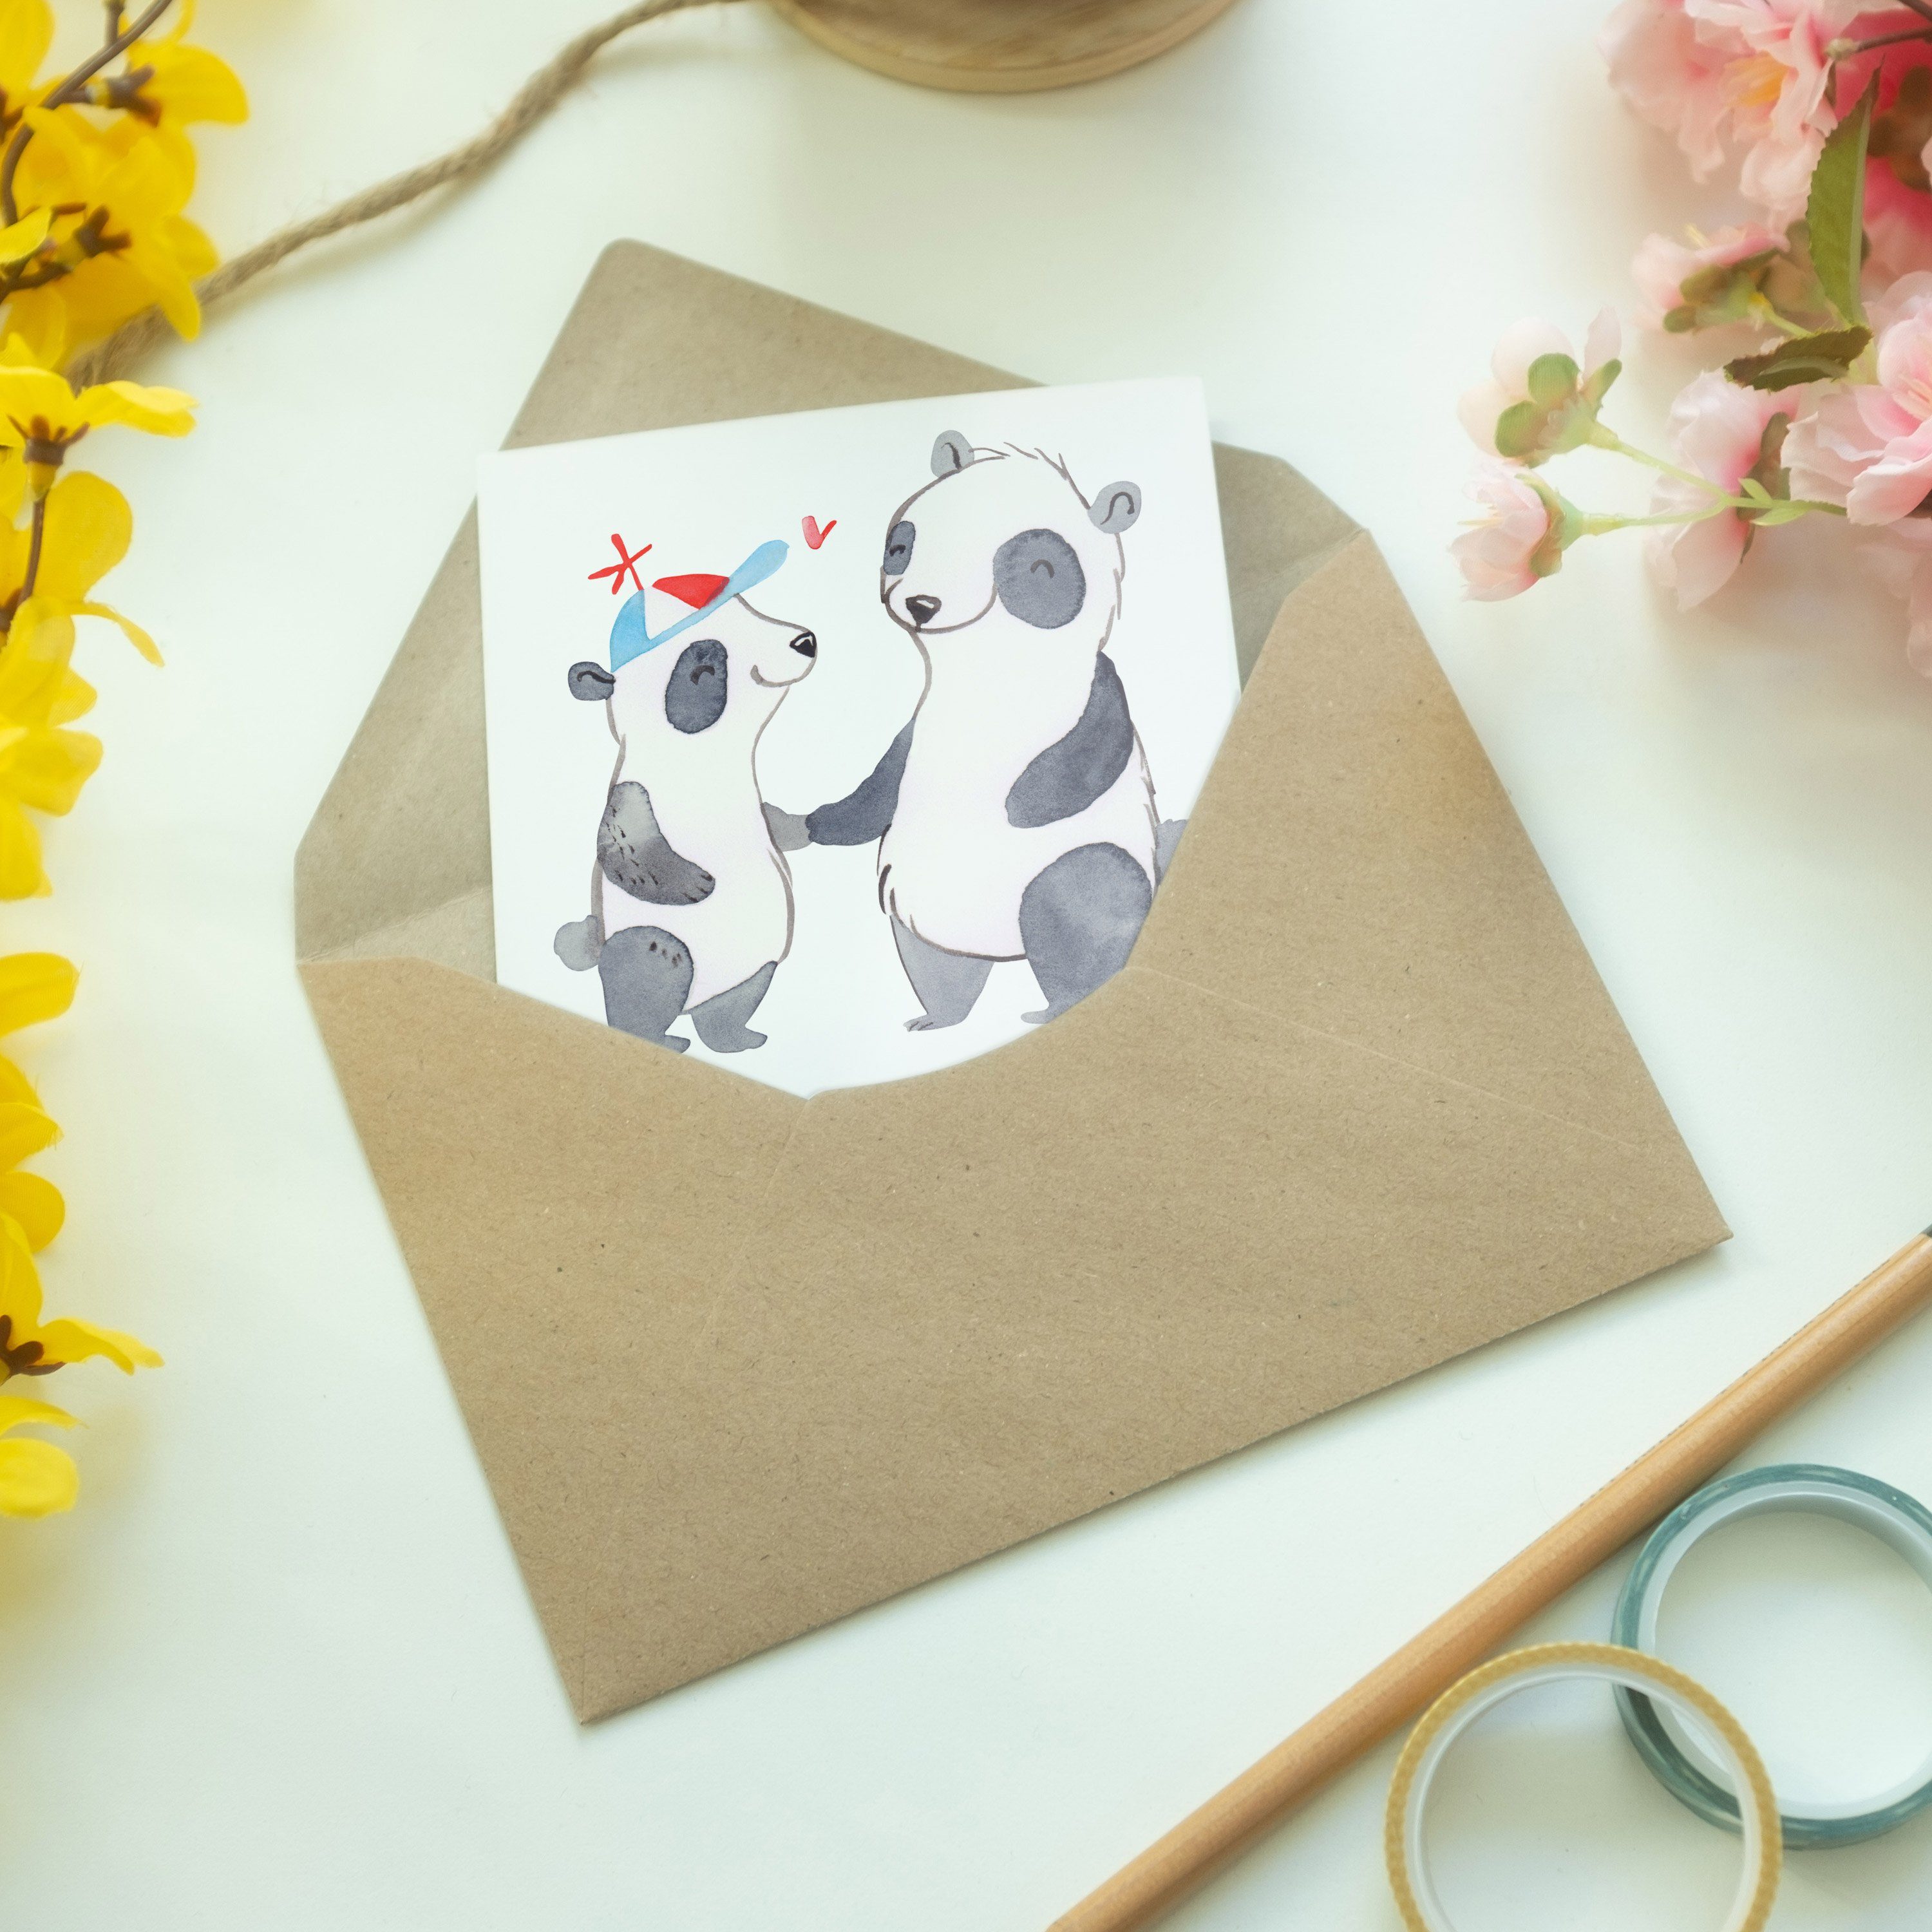 Mrs. Bester Mr. Geschenk, Einladungsk Panda - & der Welt Grußkarte Panda Cousin - Weiß Schenken,